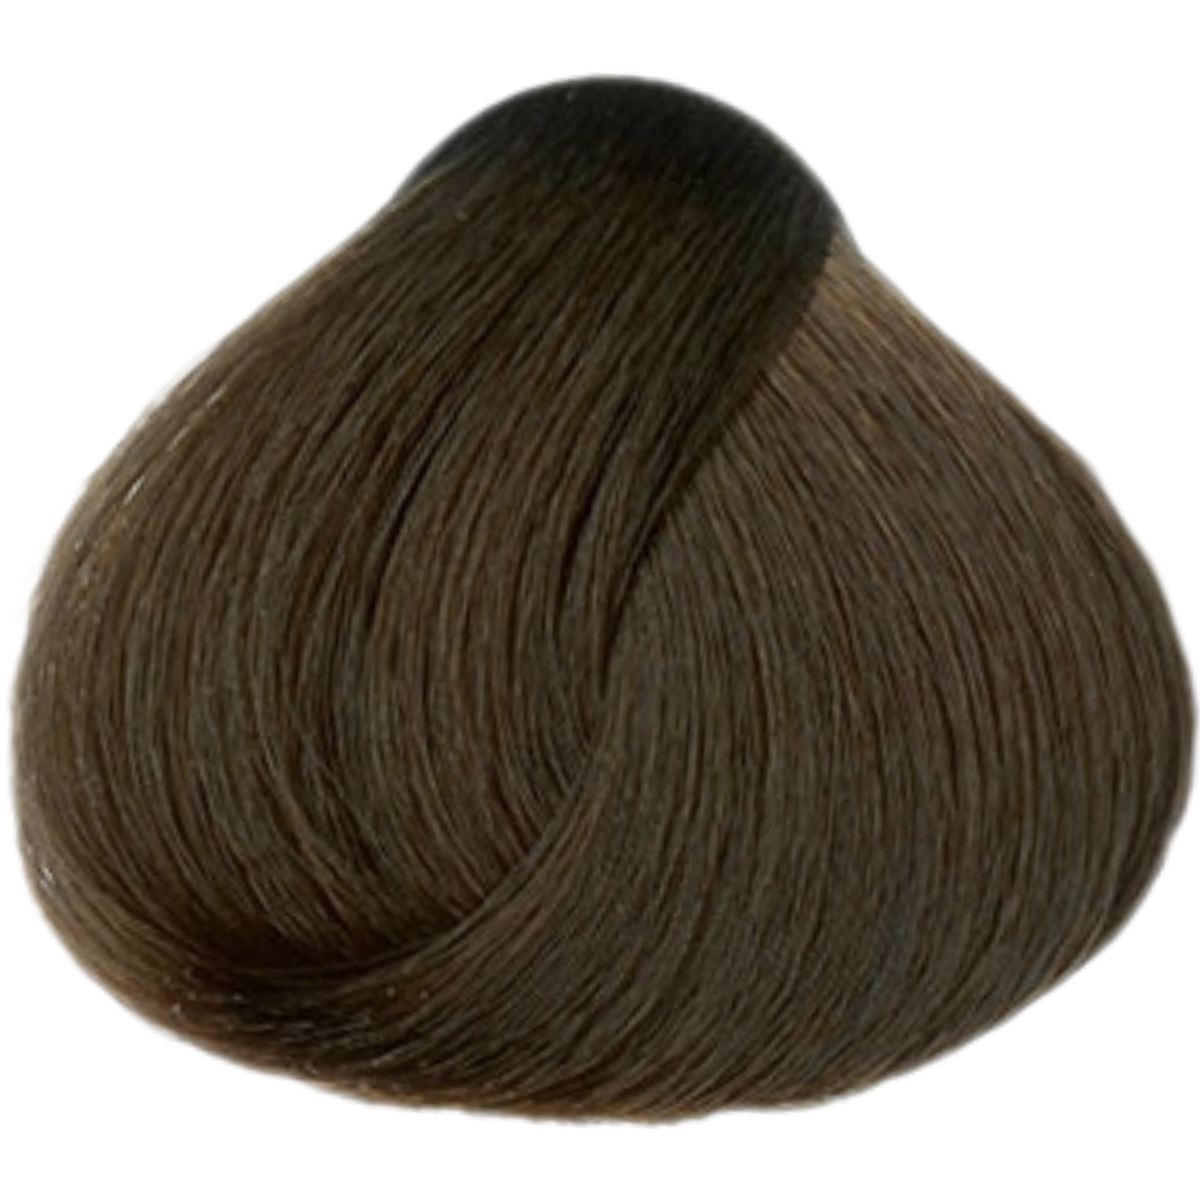 צבע שיער 7.7 MEDIUM BLONDE פארמויטה FarmaVita צבע לשיער 60 גרם